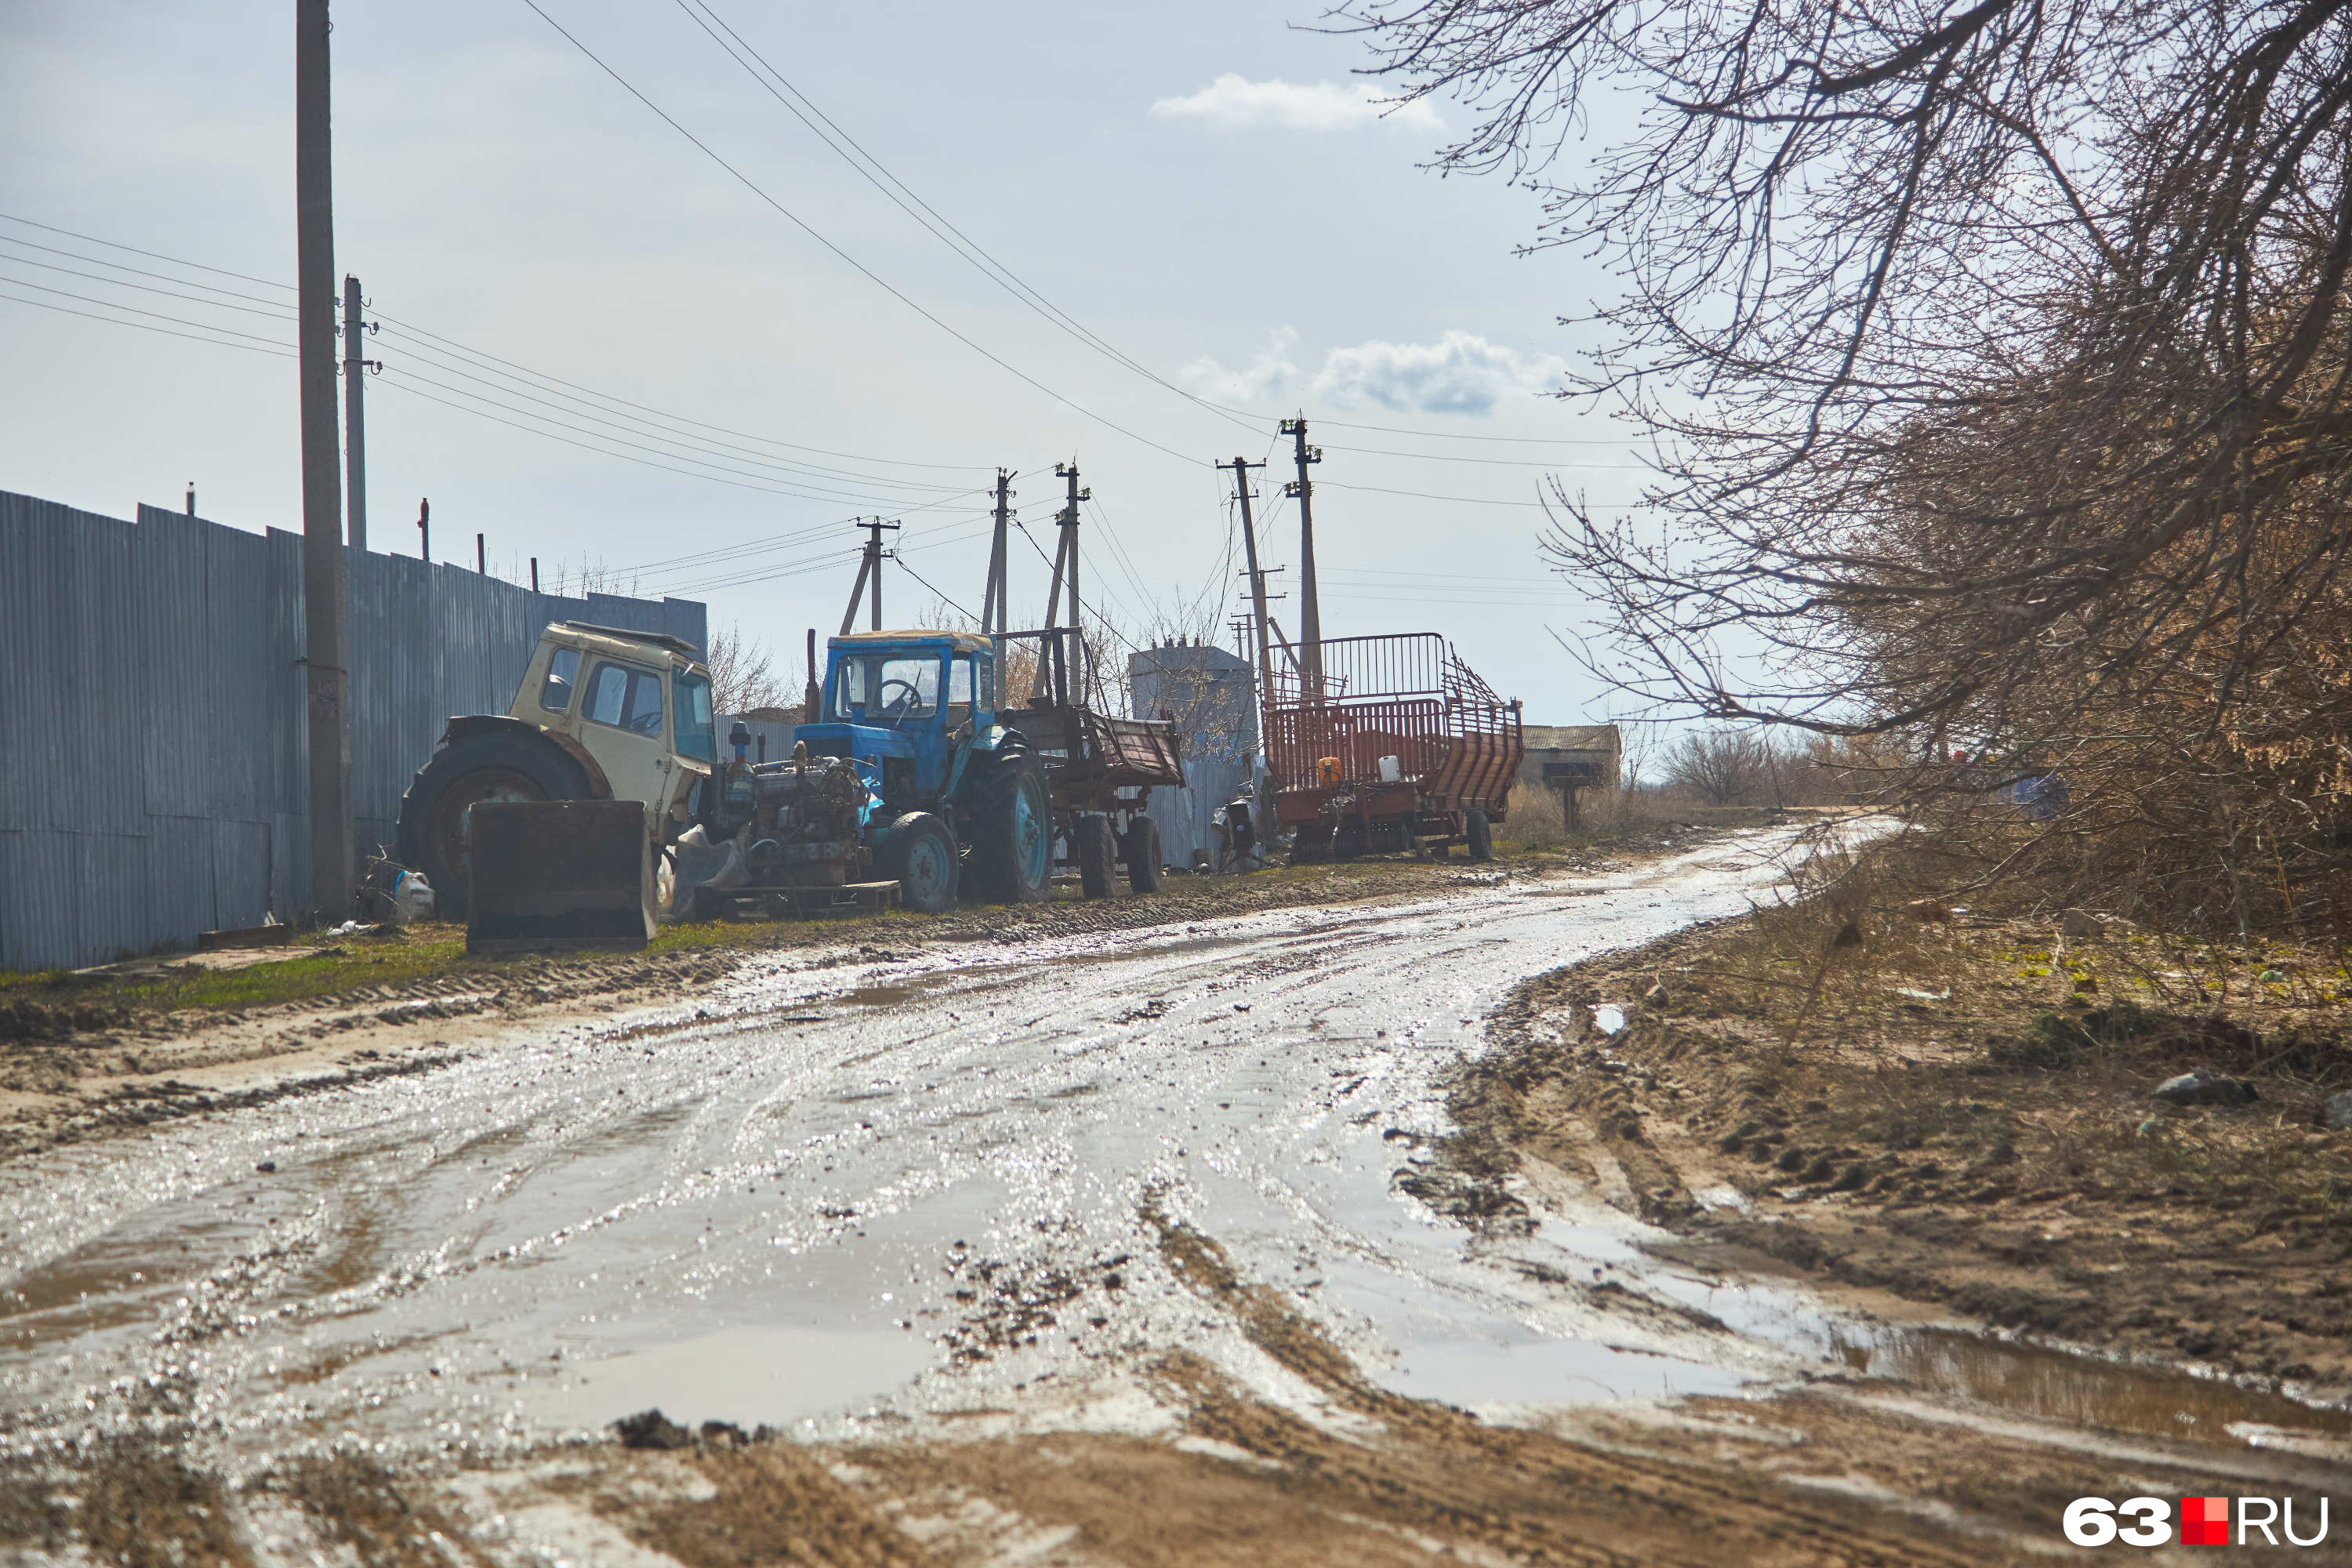 О славном сельскохозяйственном прошлом Климовки напоминает техника, принадлежащая тем, кто продолжает тянуть собственные хозяйства